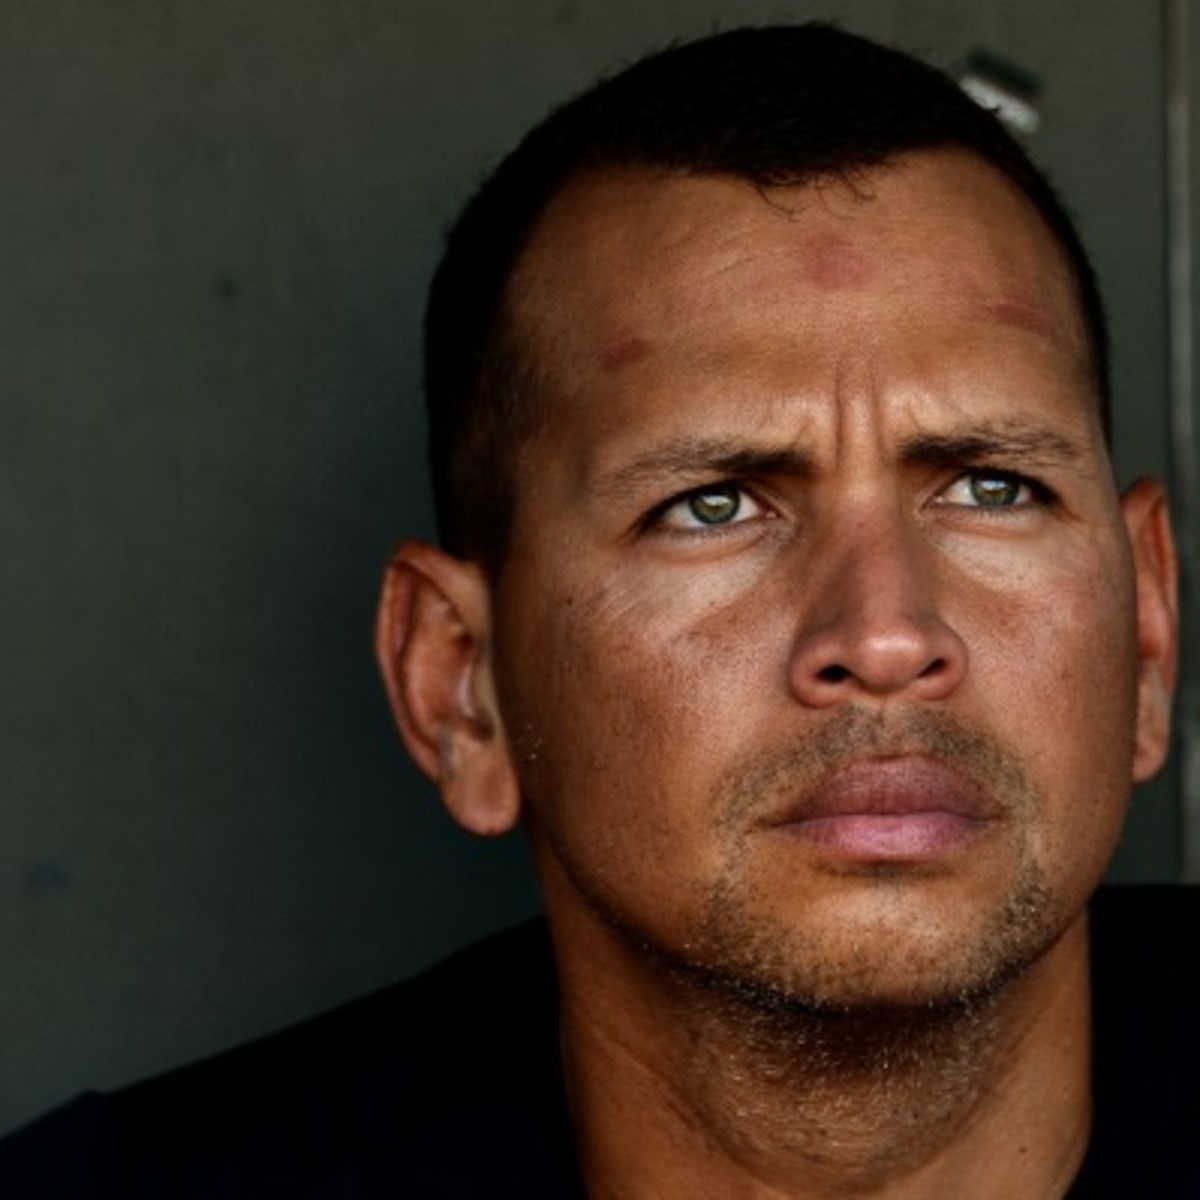 Alex Rodriguez, MLBPA OK going forward, says union head